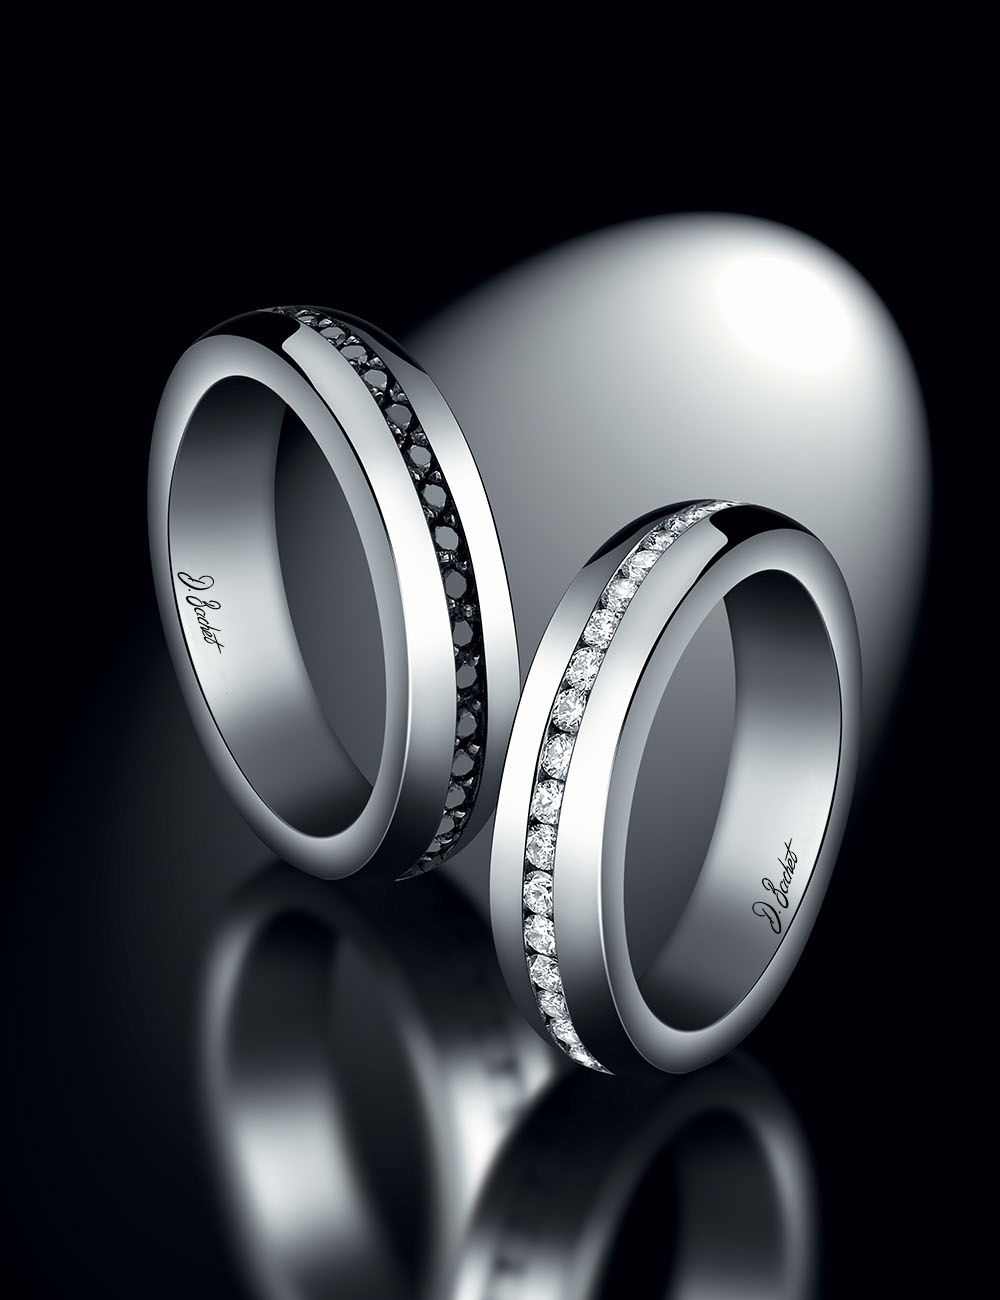 Alliance de mariage homme de D.Bachet, traditionnelle avec diamants noirs en ligne centrale, en platine.